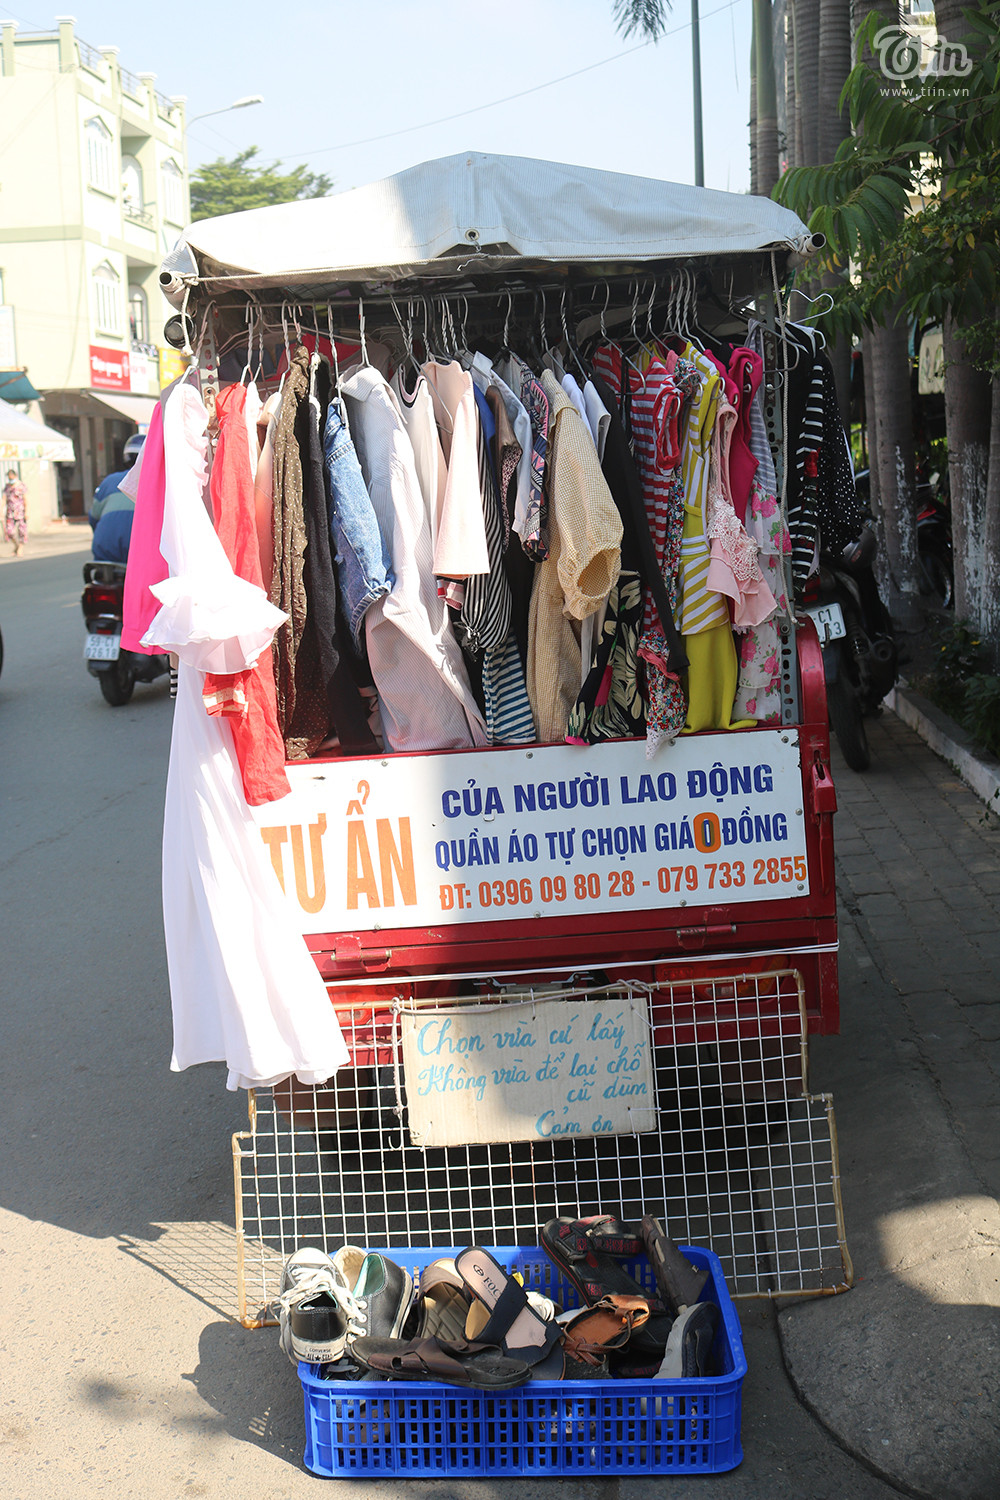 Cụ ông 80 tuổi lái xe ba gác đi khắp Sài Gòn bán quần áo tự chọn 0 đồng  - Ảnh 3